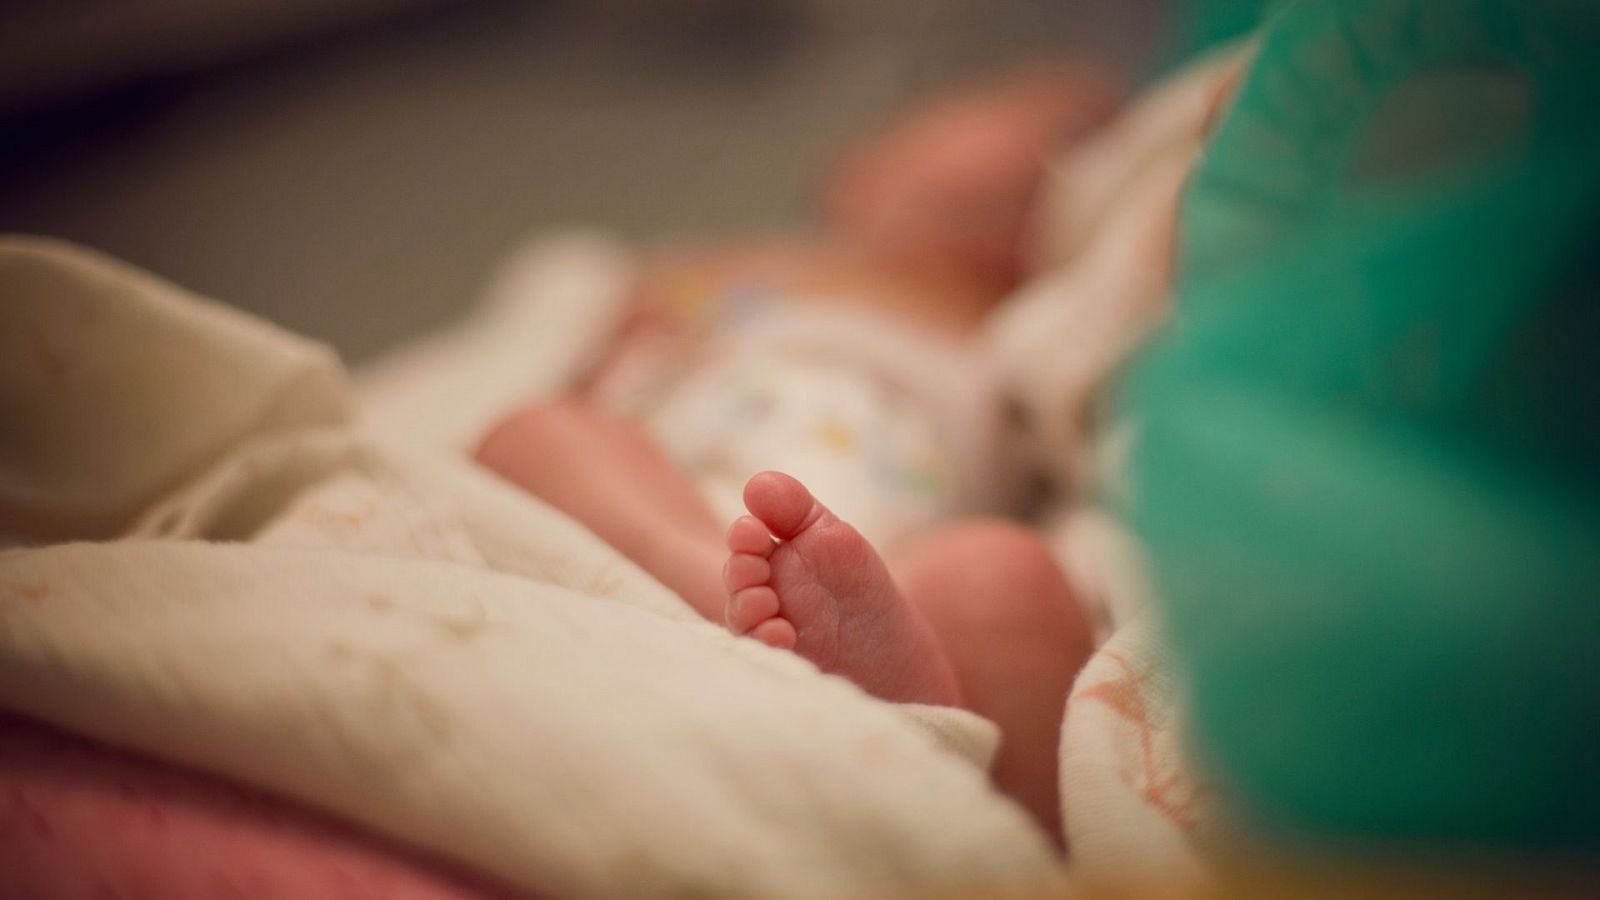 Marcapasos sin cables a un bebé prematuro: "Se abre una puerta a nueva forma de estimular el corazón" - Ver ahora